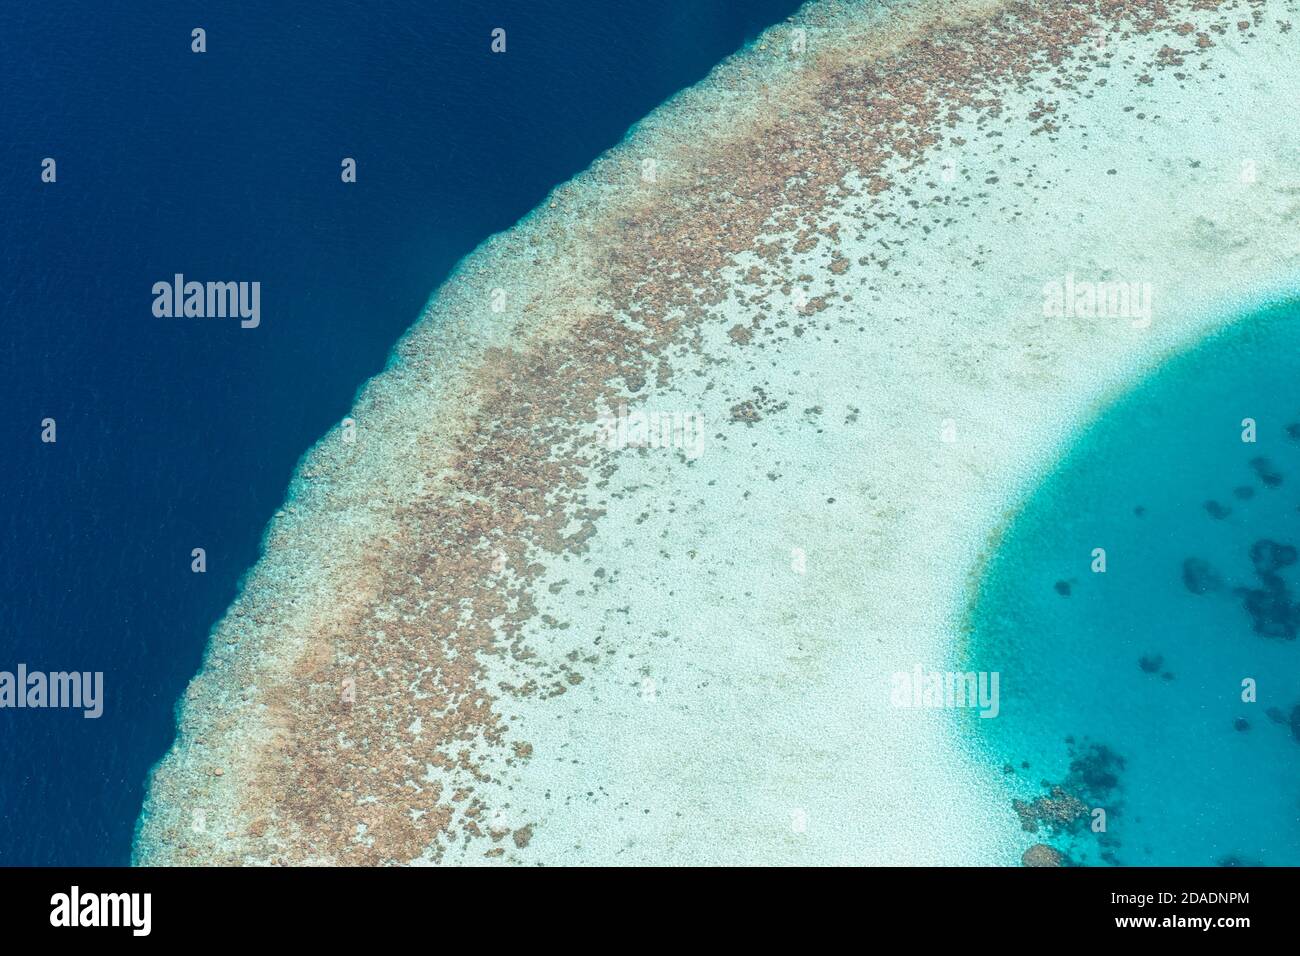 Wunderschöne tropische Insel. Luftaufnahme auf tropischen Inseln, Drohne, Flugbild vom Korallenriff-Atoll auf den Malediven. Exotische Reise Natur Ziel Stockfoto